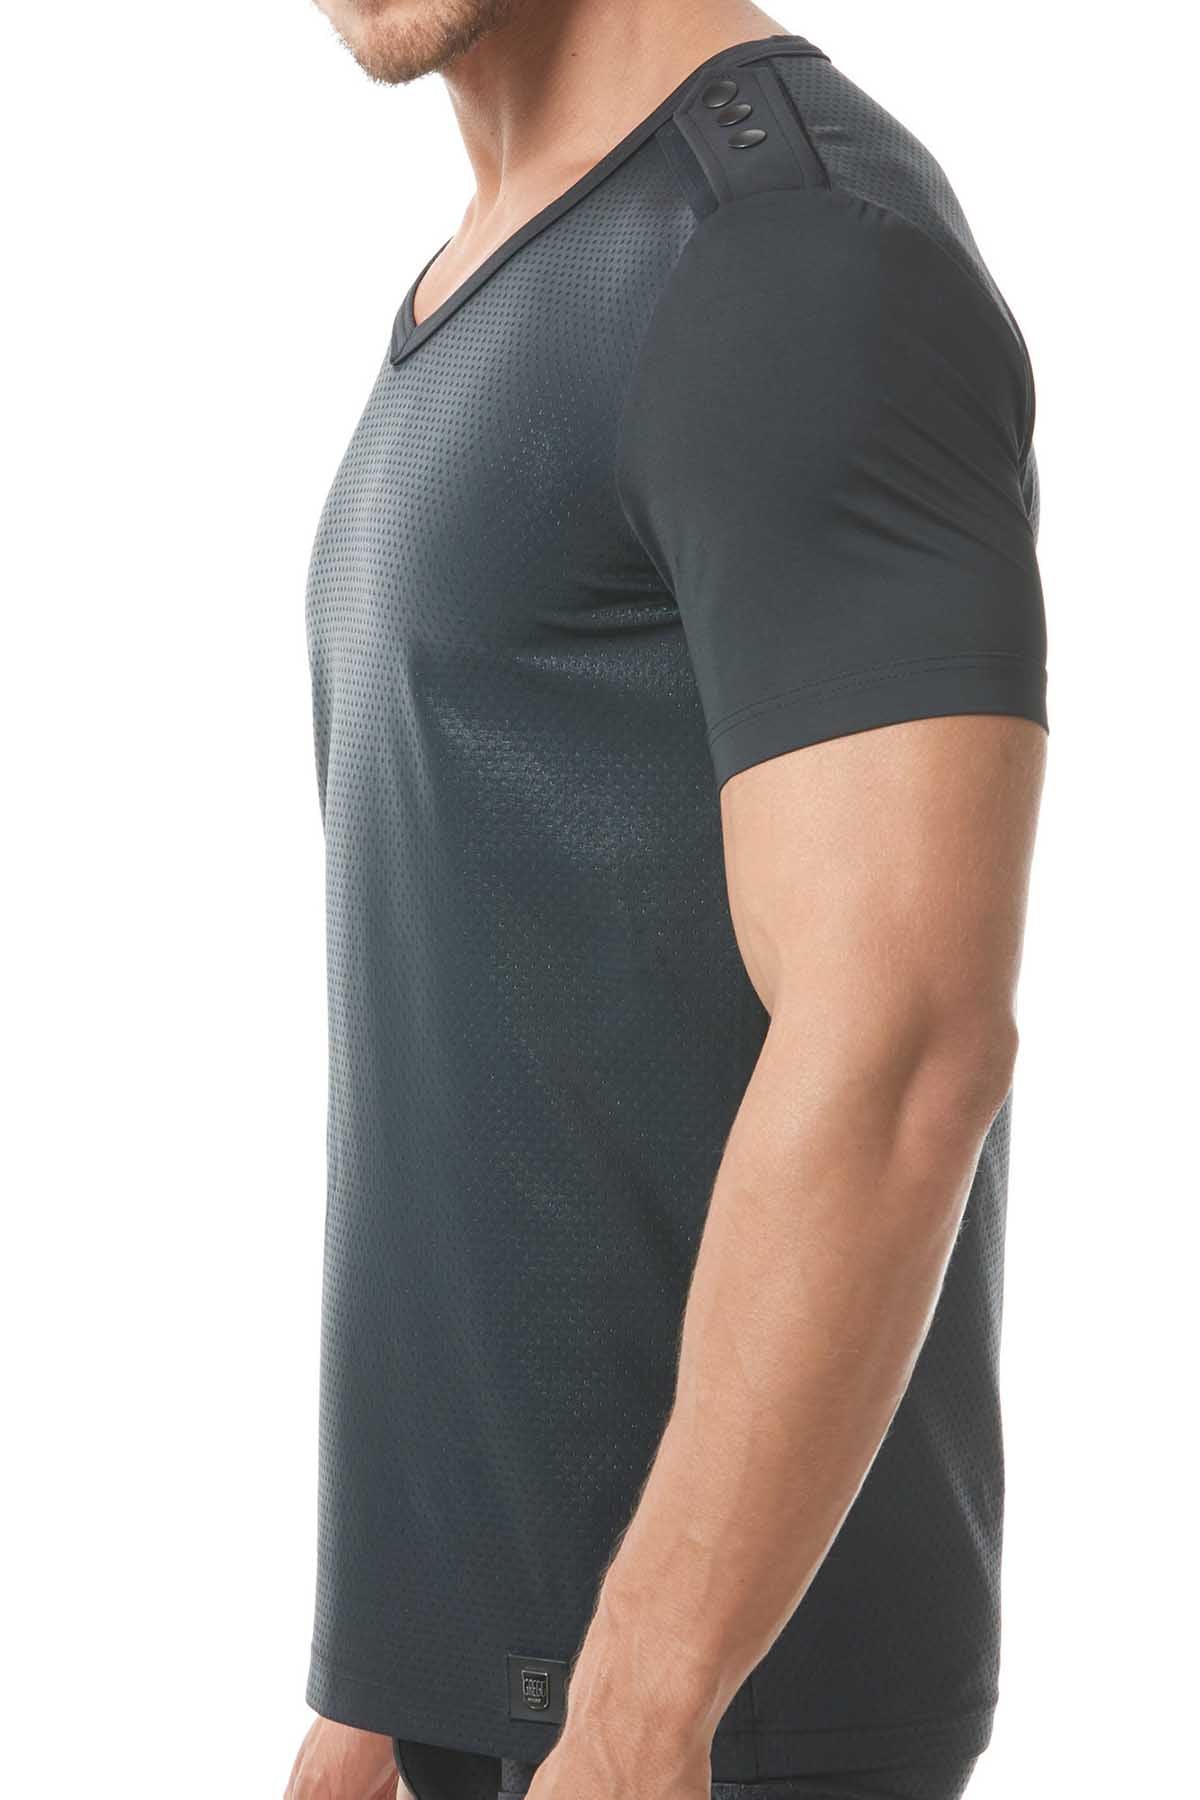 Gregg Homme Black Reveal Italian Jacquard T-Shirt